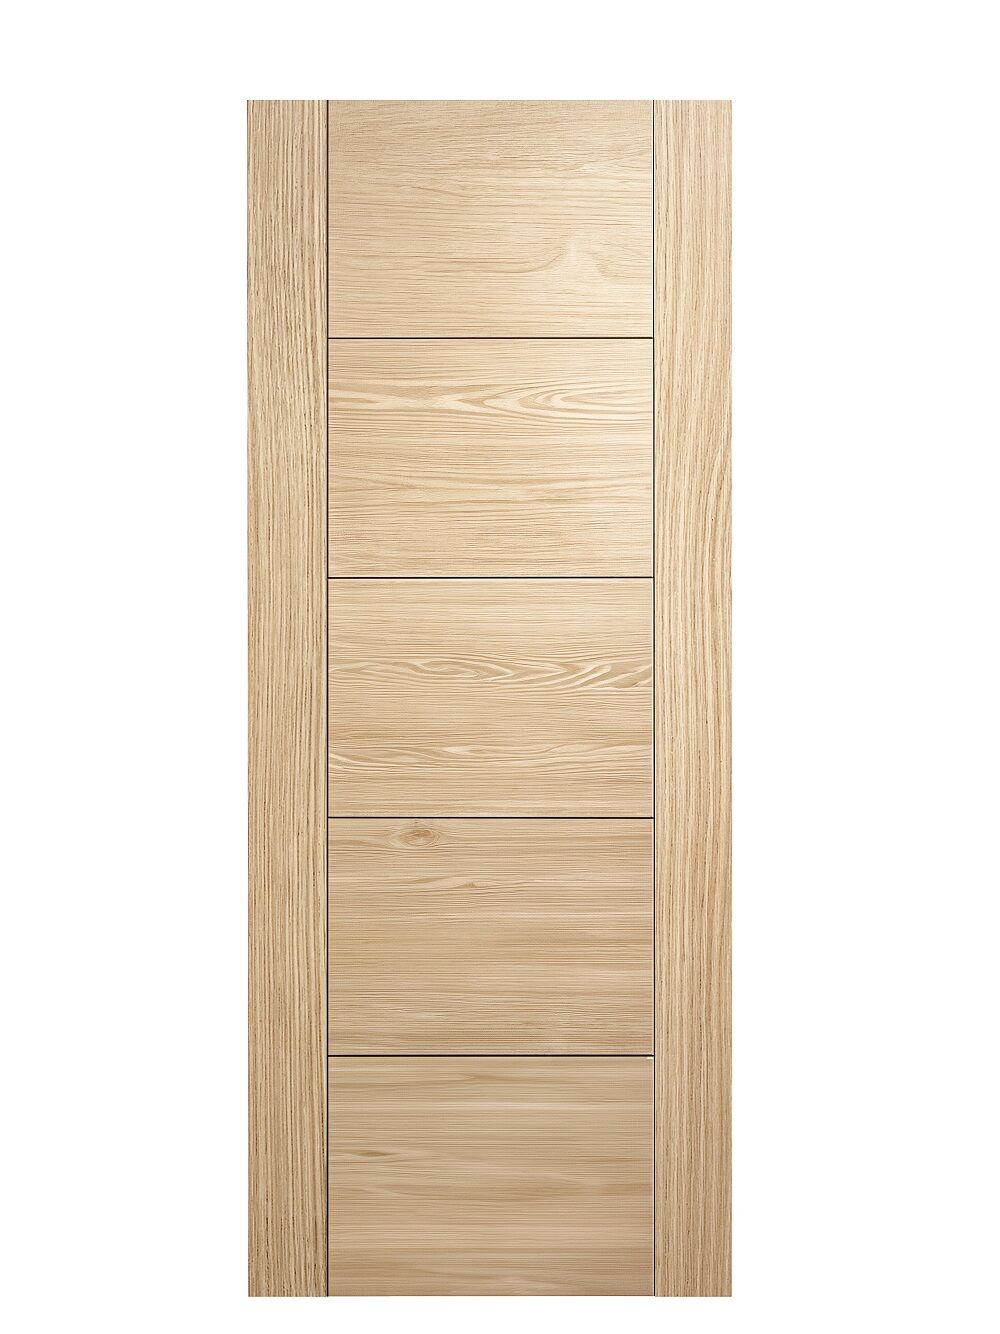 Aster Horizontal Five Panel V-Groove Unfinished Oak Internal Door